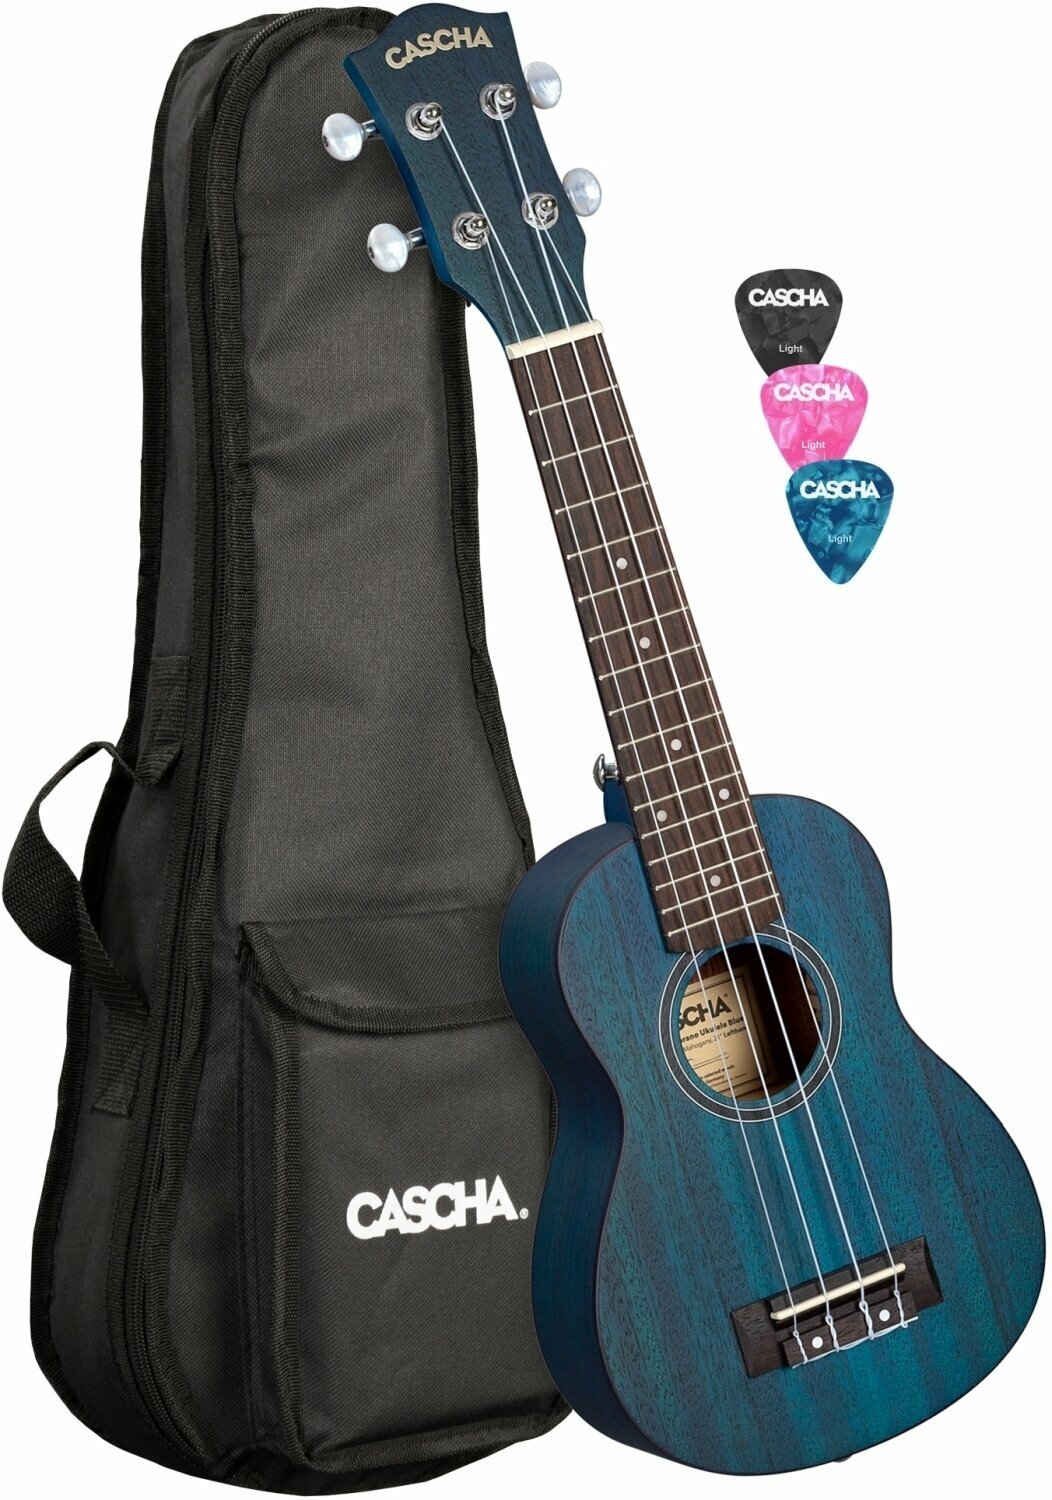 Szoprán ukulele Cascha HH 2266L Szoprán ukulele Blue